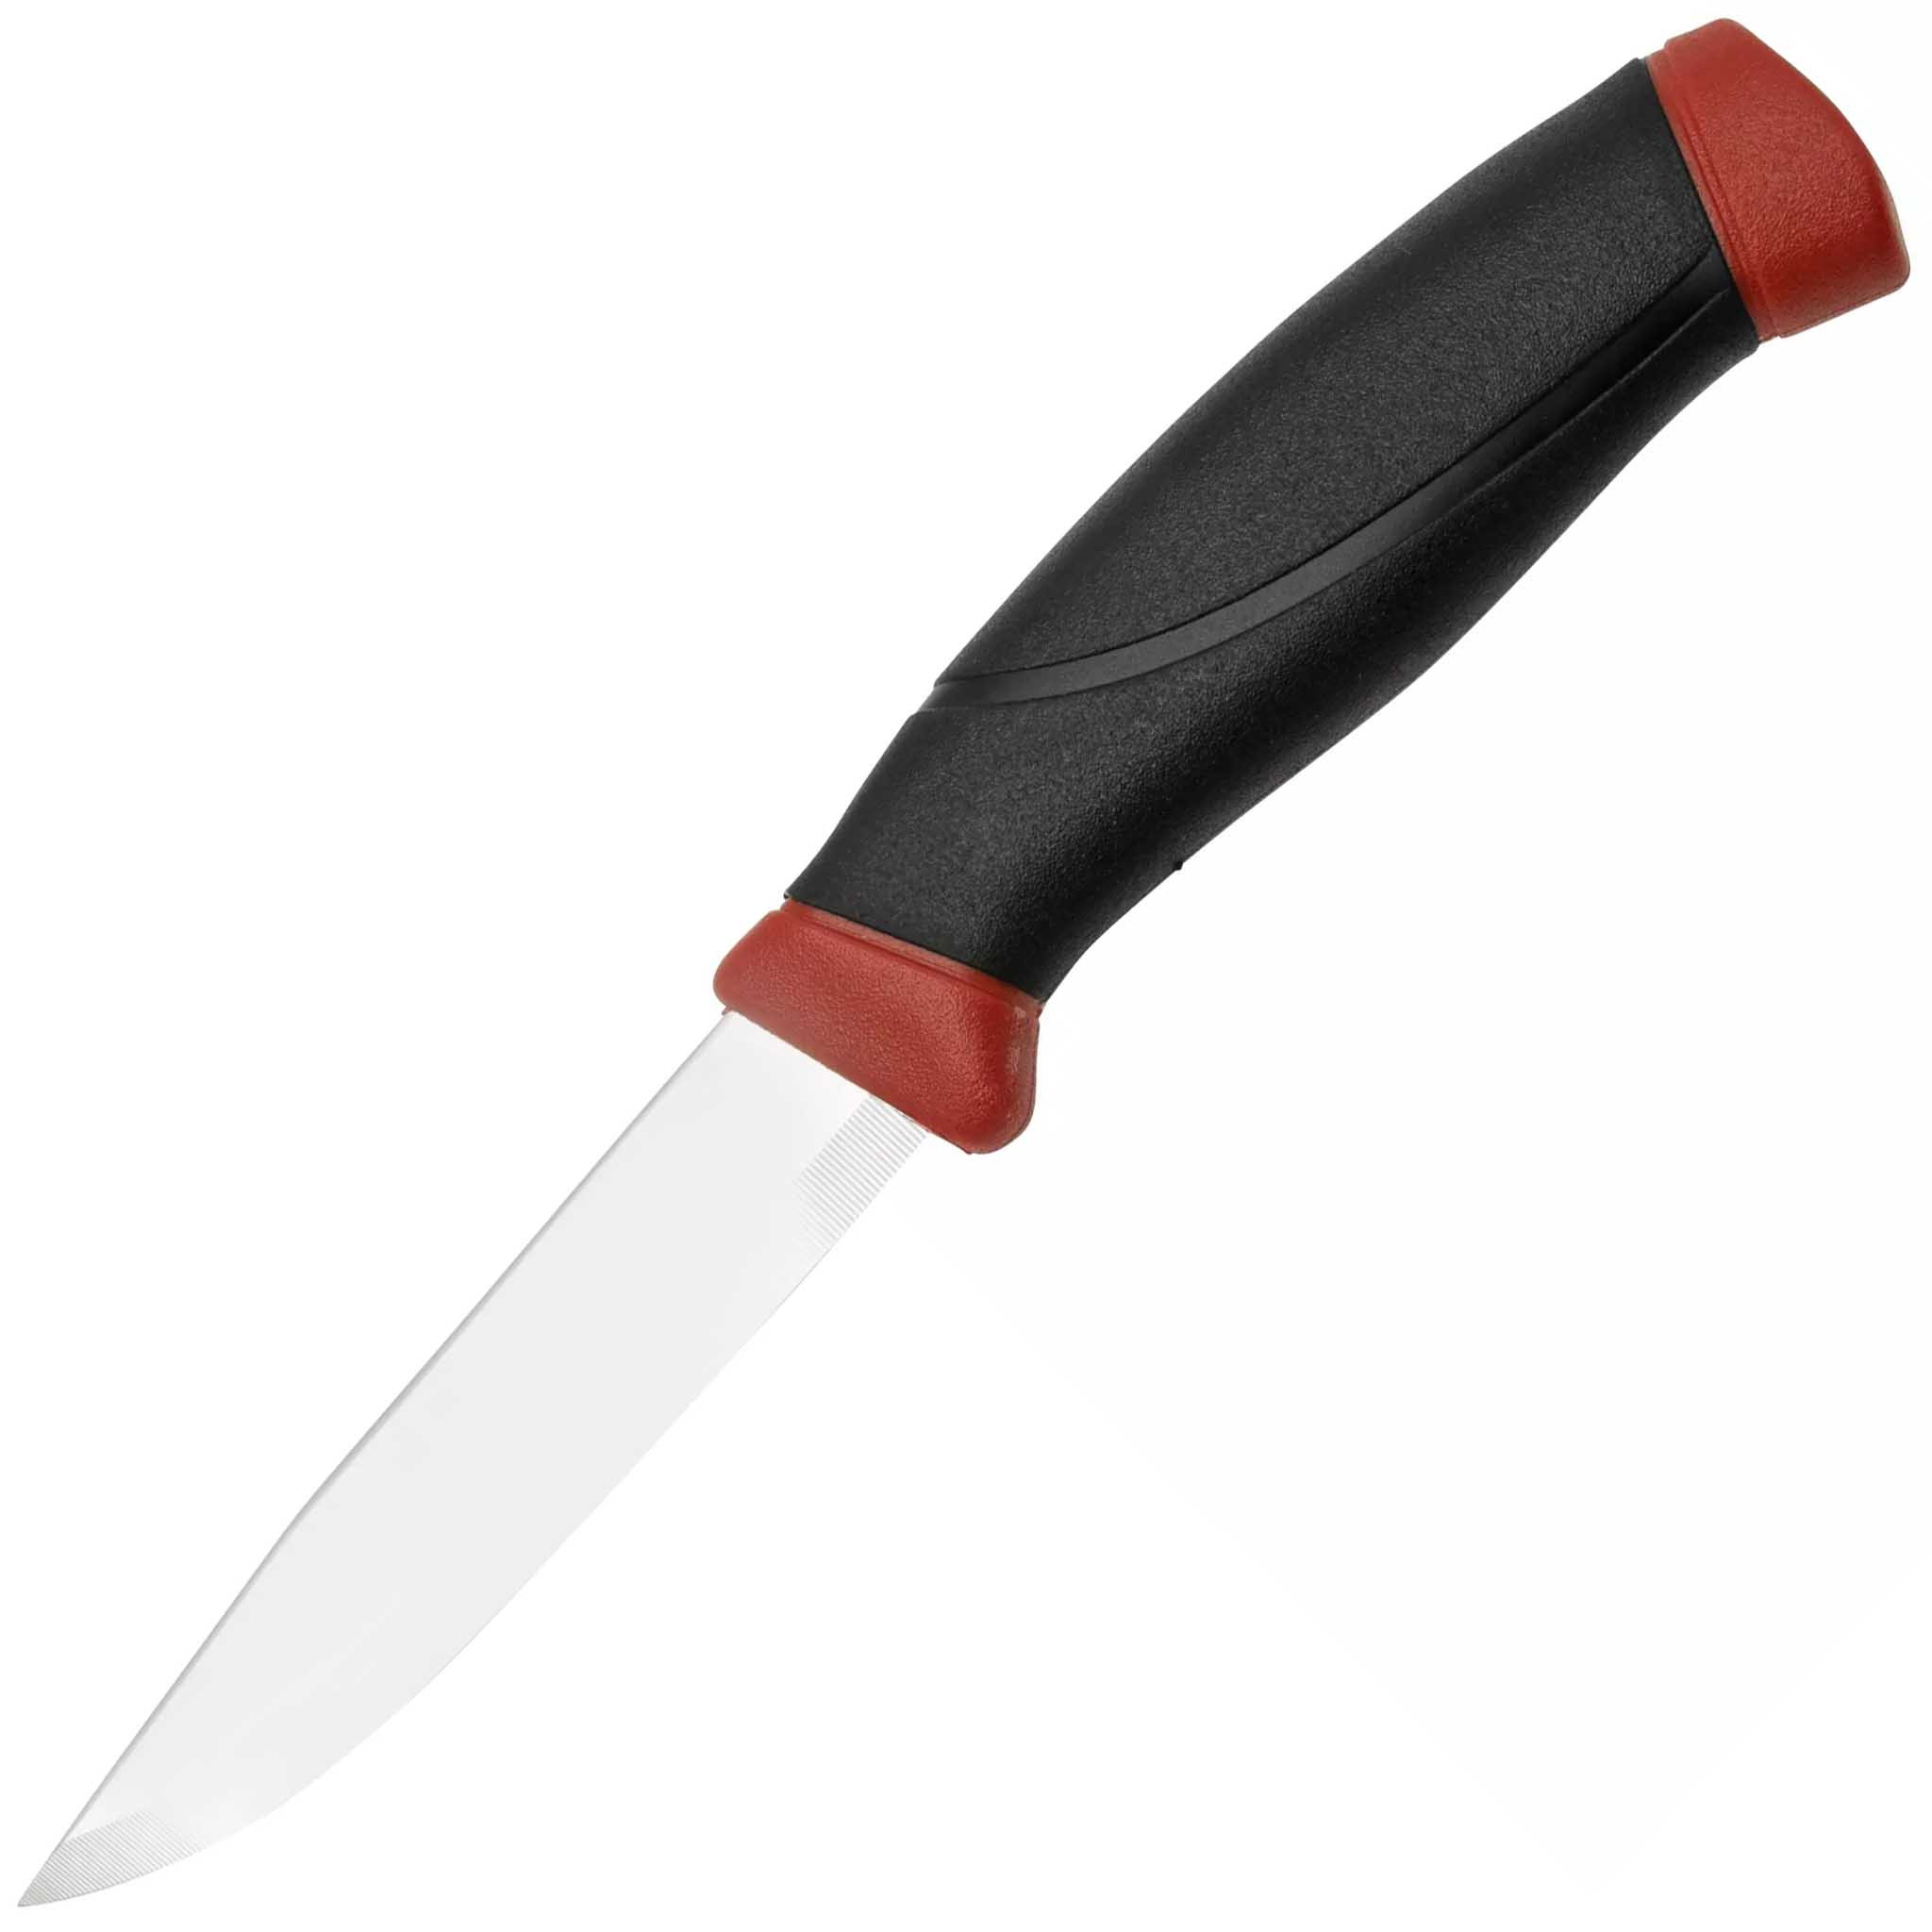 Нож с фиксированным лезвием Morakniv Companion, сталь Sandvik 12C27, рукоять резина, Dala red - фото 1